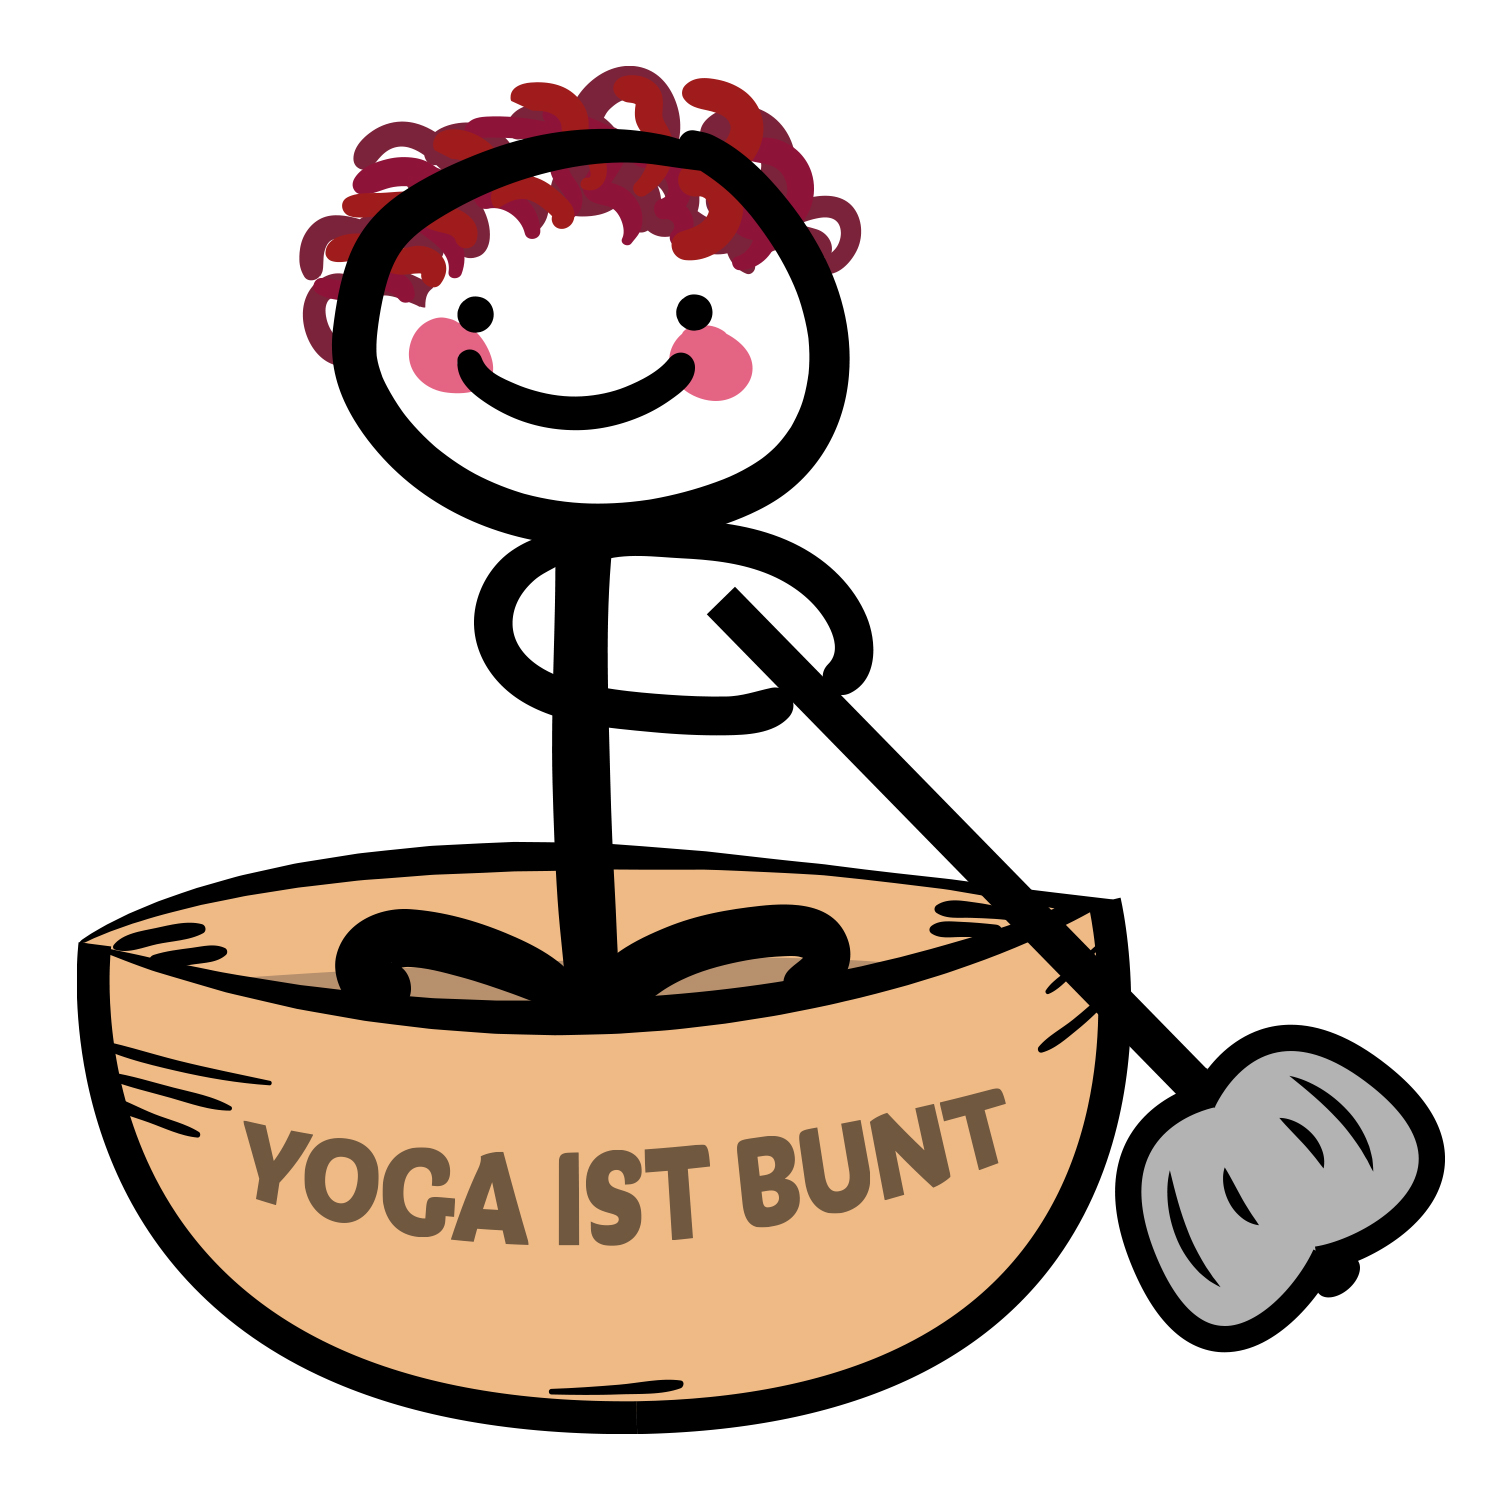 (c) Yoga-ist-bunt.de